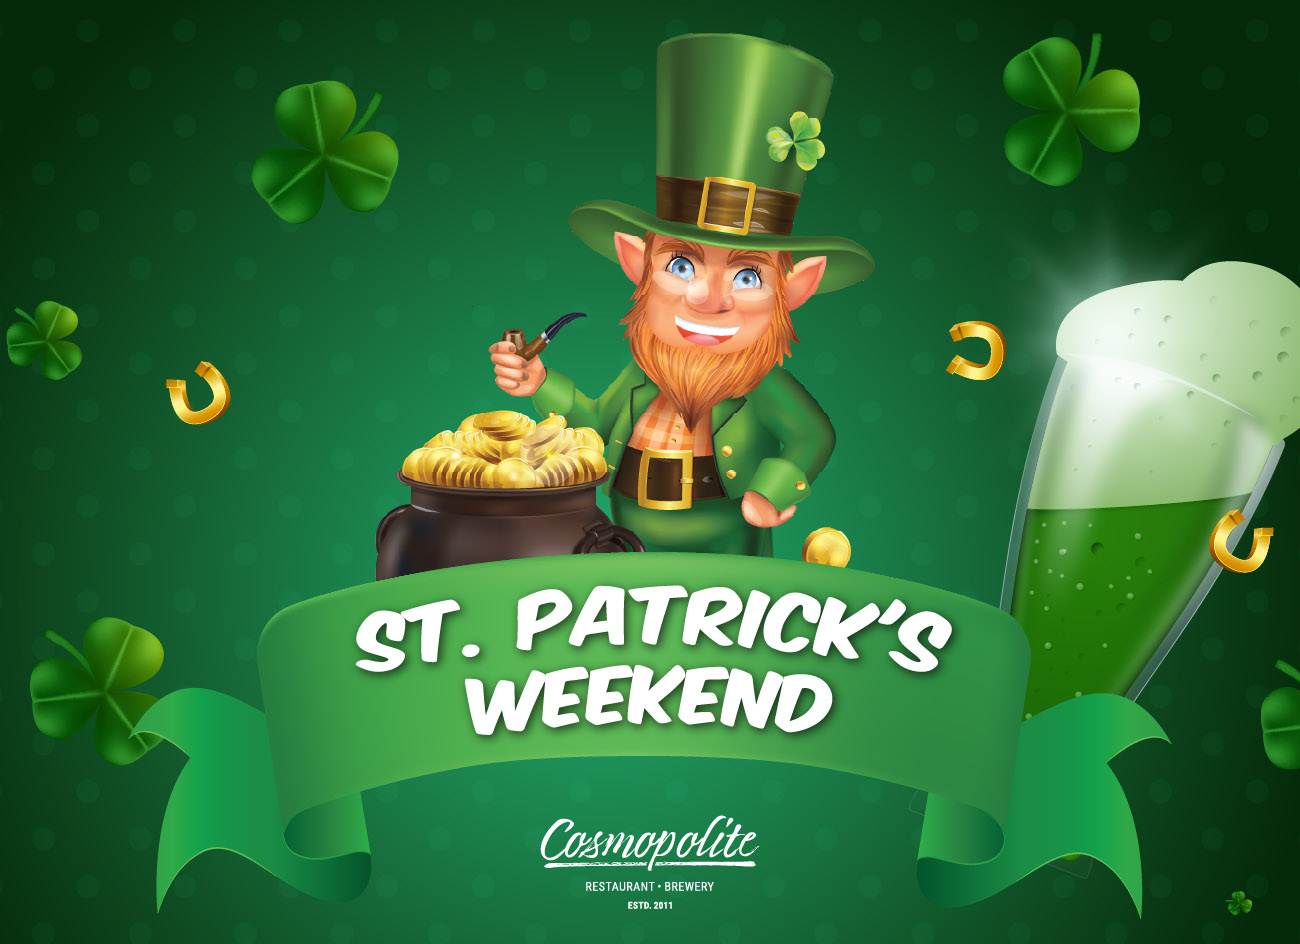 St. Patrick's weekend at Cosmopolite!